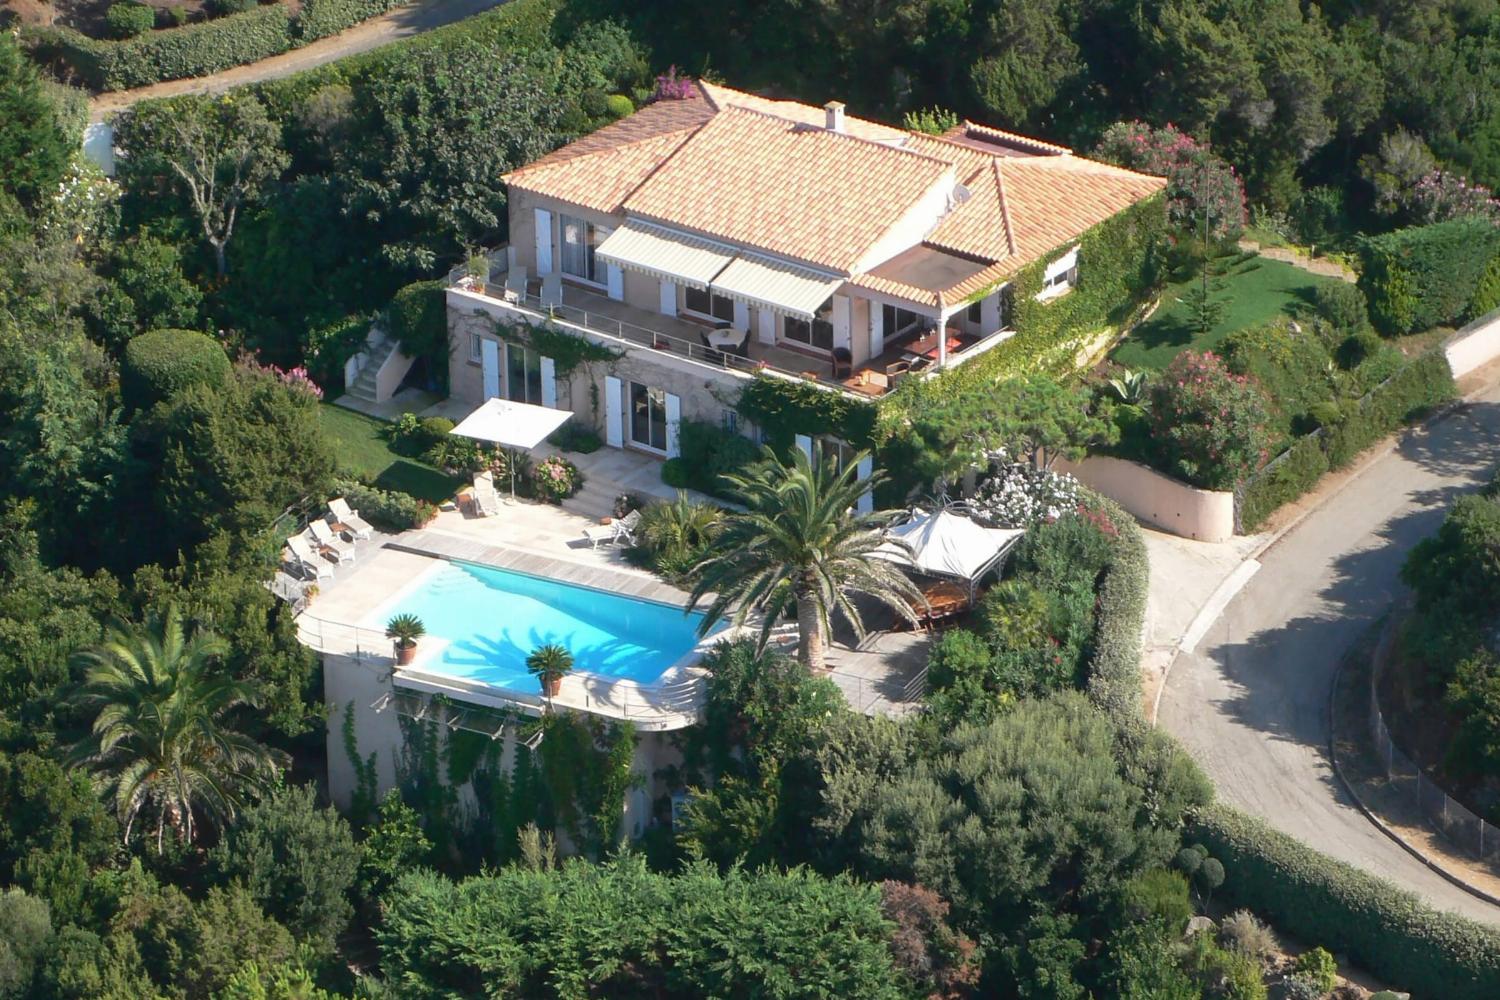 Villa de vacances en Corse avec piscine privée à débordement chauffée